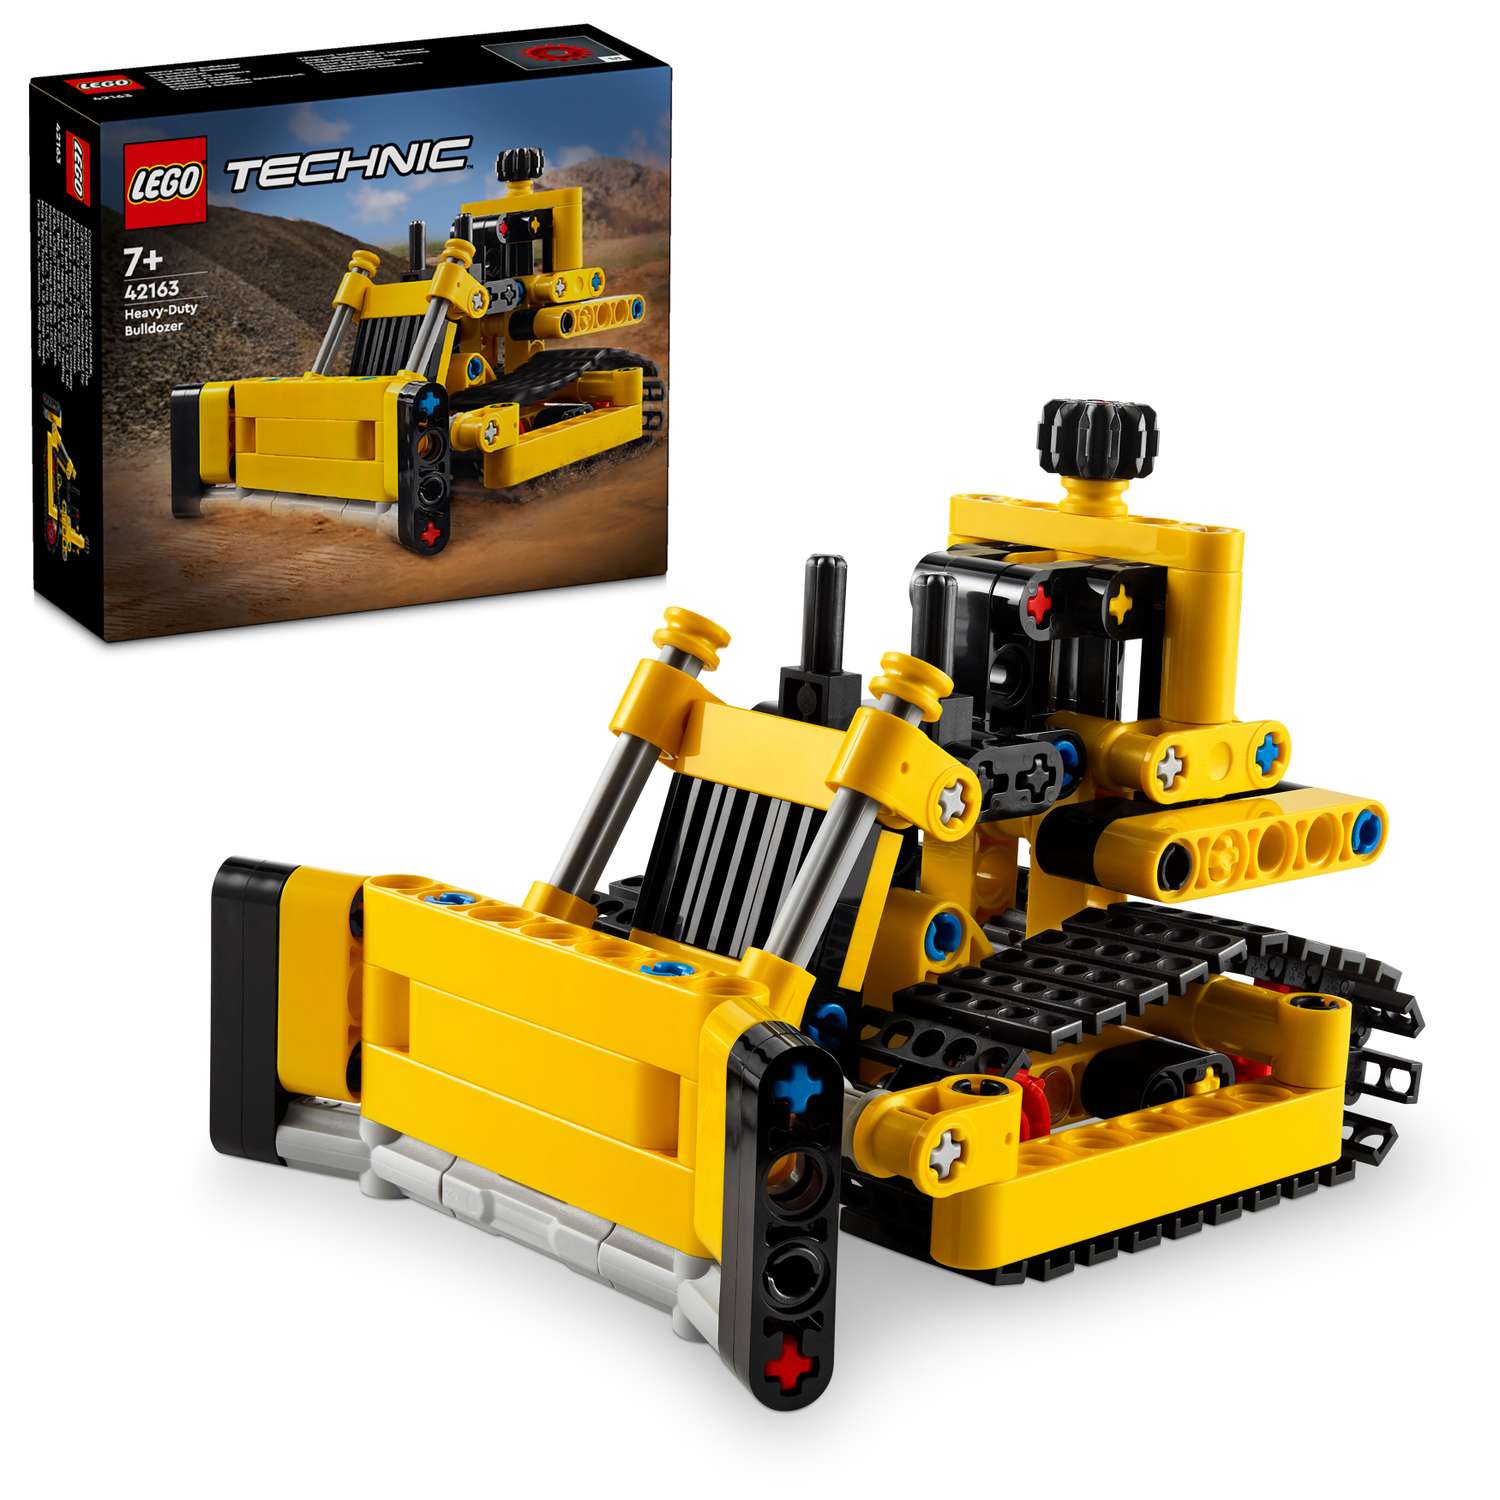 Конструктор LEGO Technic Cверхмощный бульдозер 42163 - фото 1